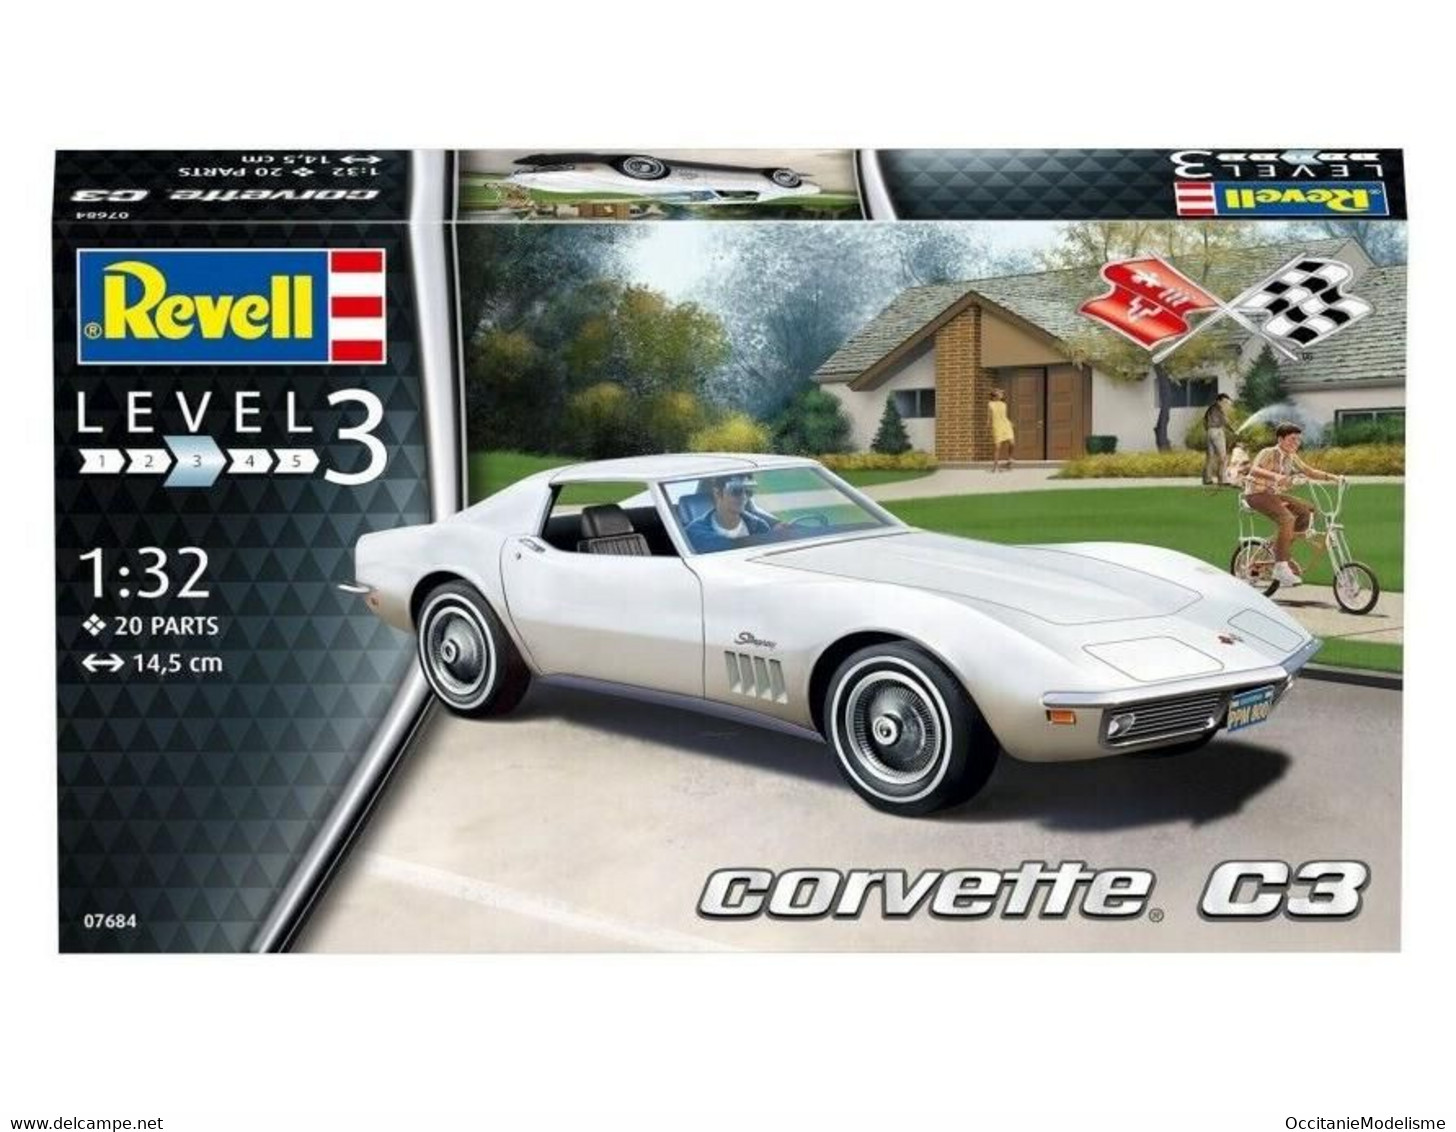 Revell - CHEVROLET CORVETTE C3 Maquette Kit Plastique 07684 Neuf NBO 1/32 - Cars